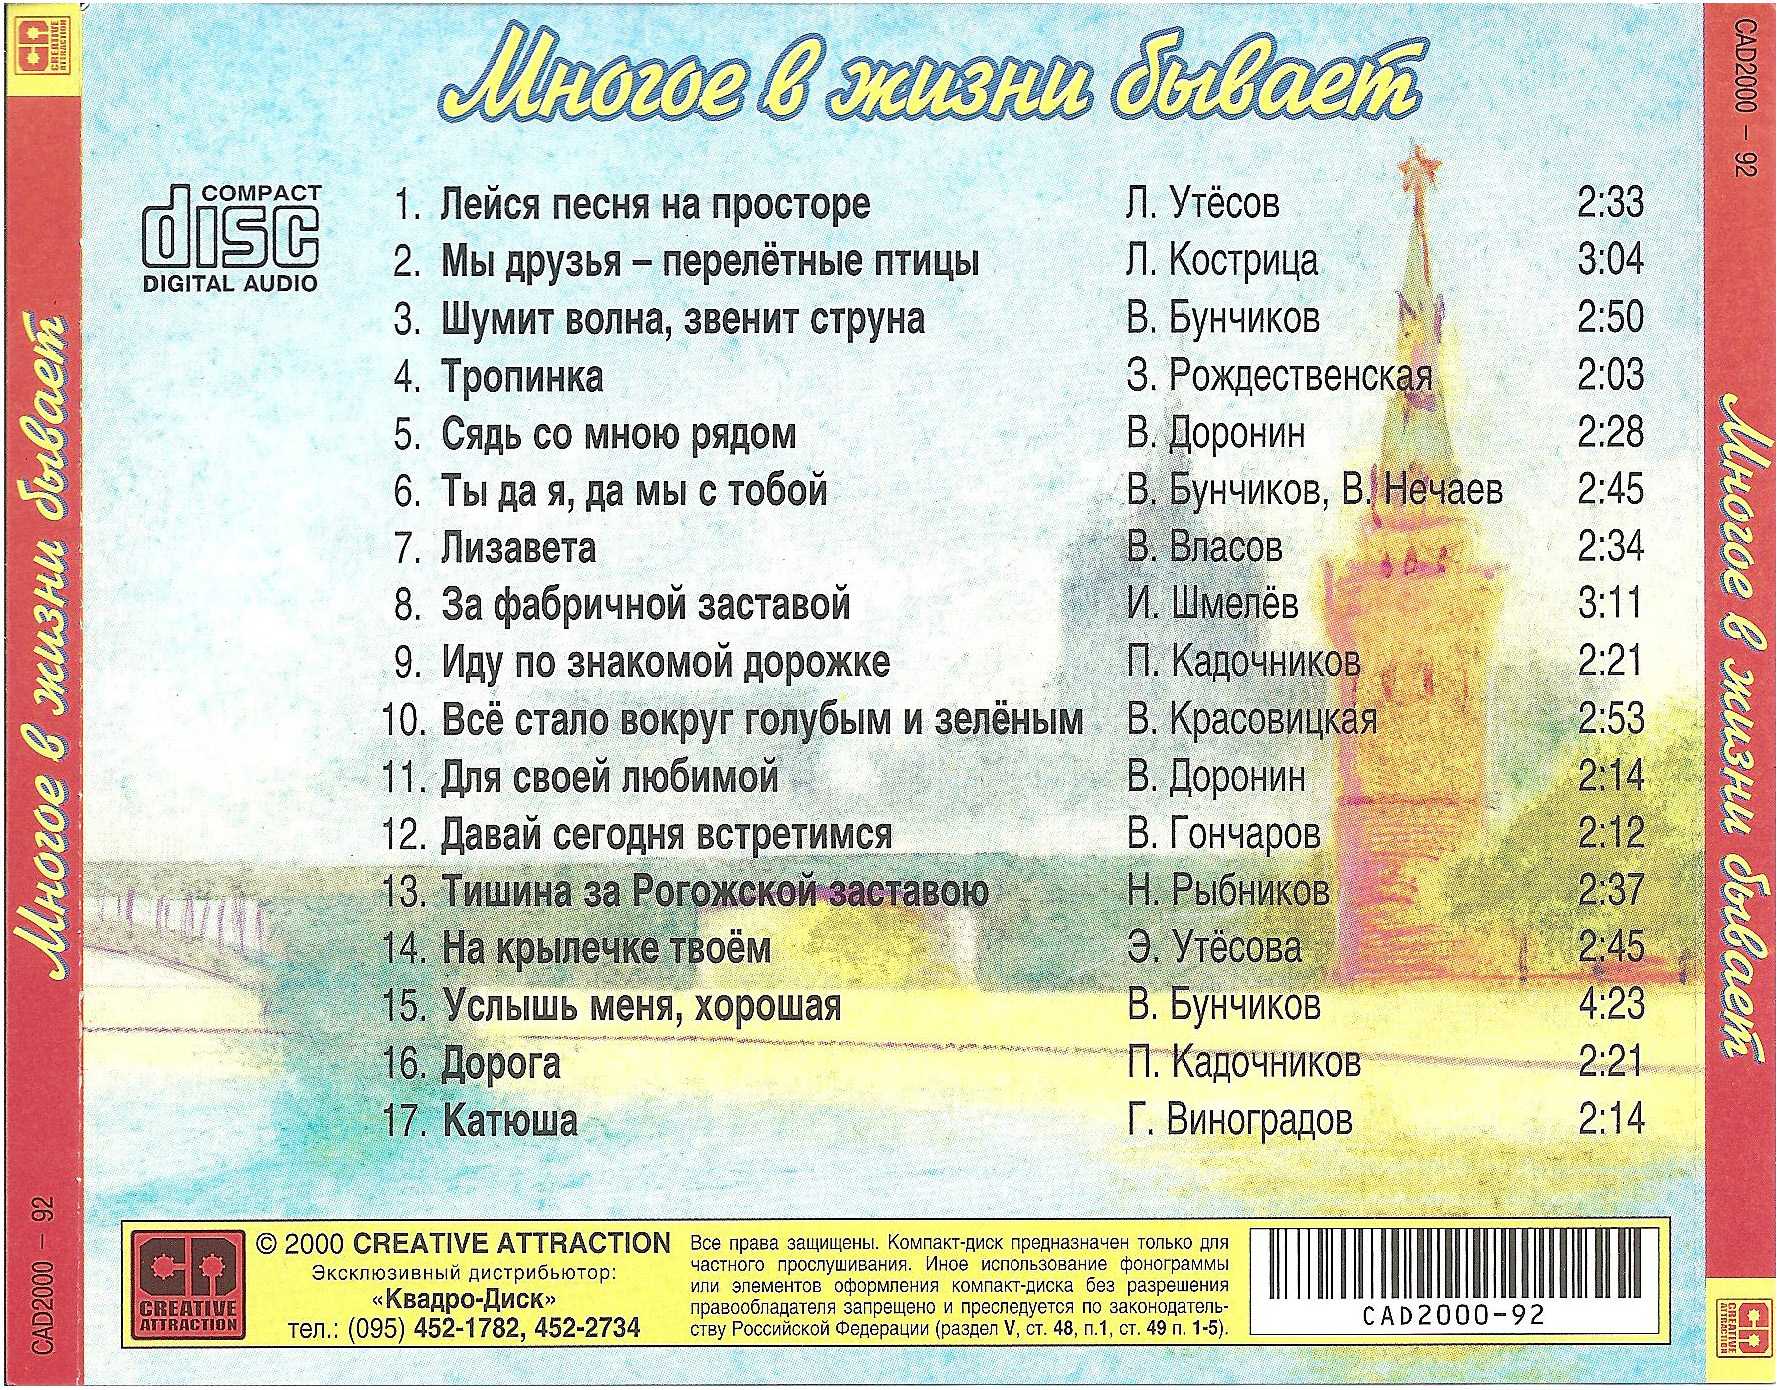 Как называют 2000 год. Список песен. Известные советские песни список. Названия известных песен. Русские песни список.